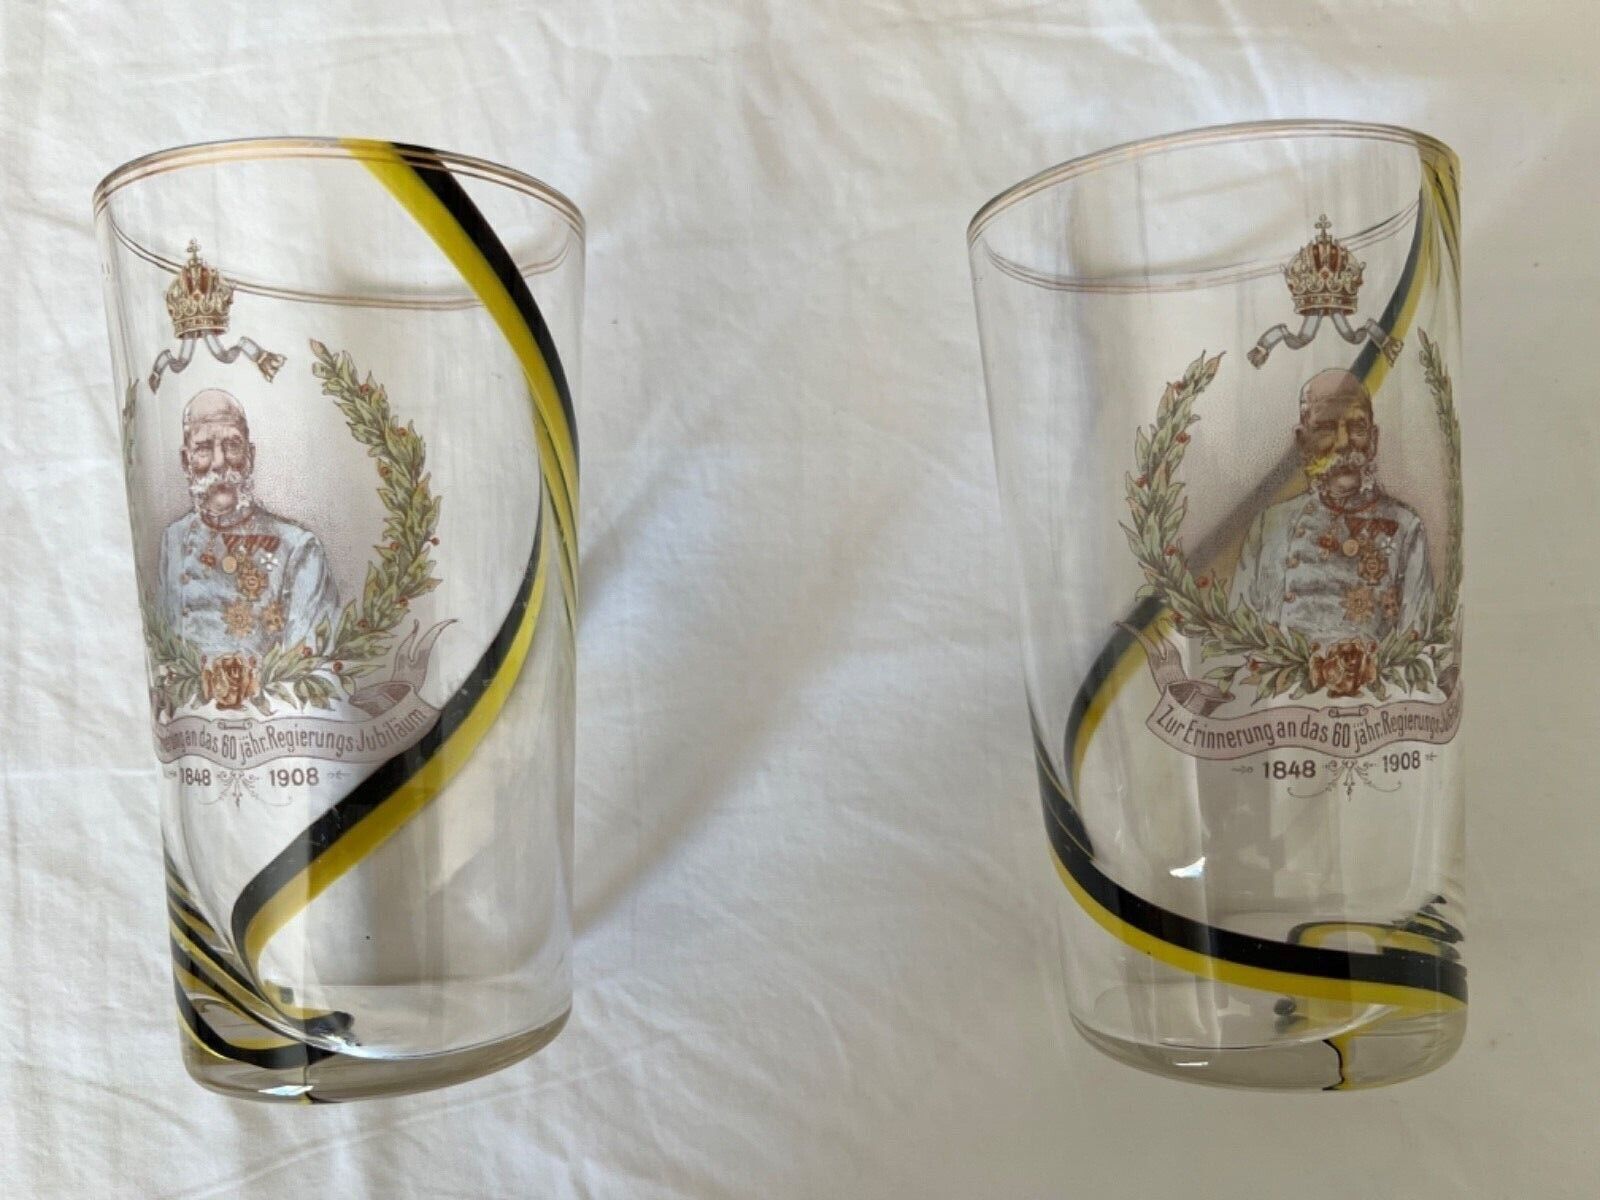 lot of 2 glasses from zur erinnerung an das 60 jahr regierungs jubilaum1848-1908